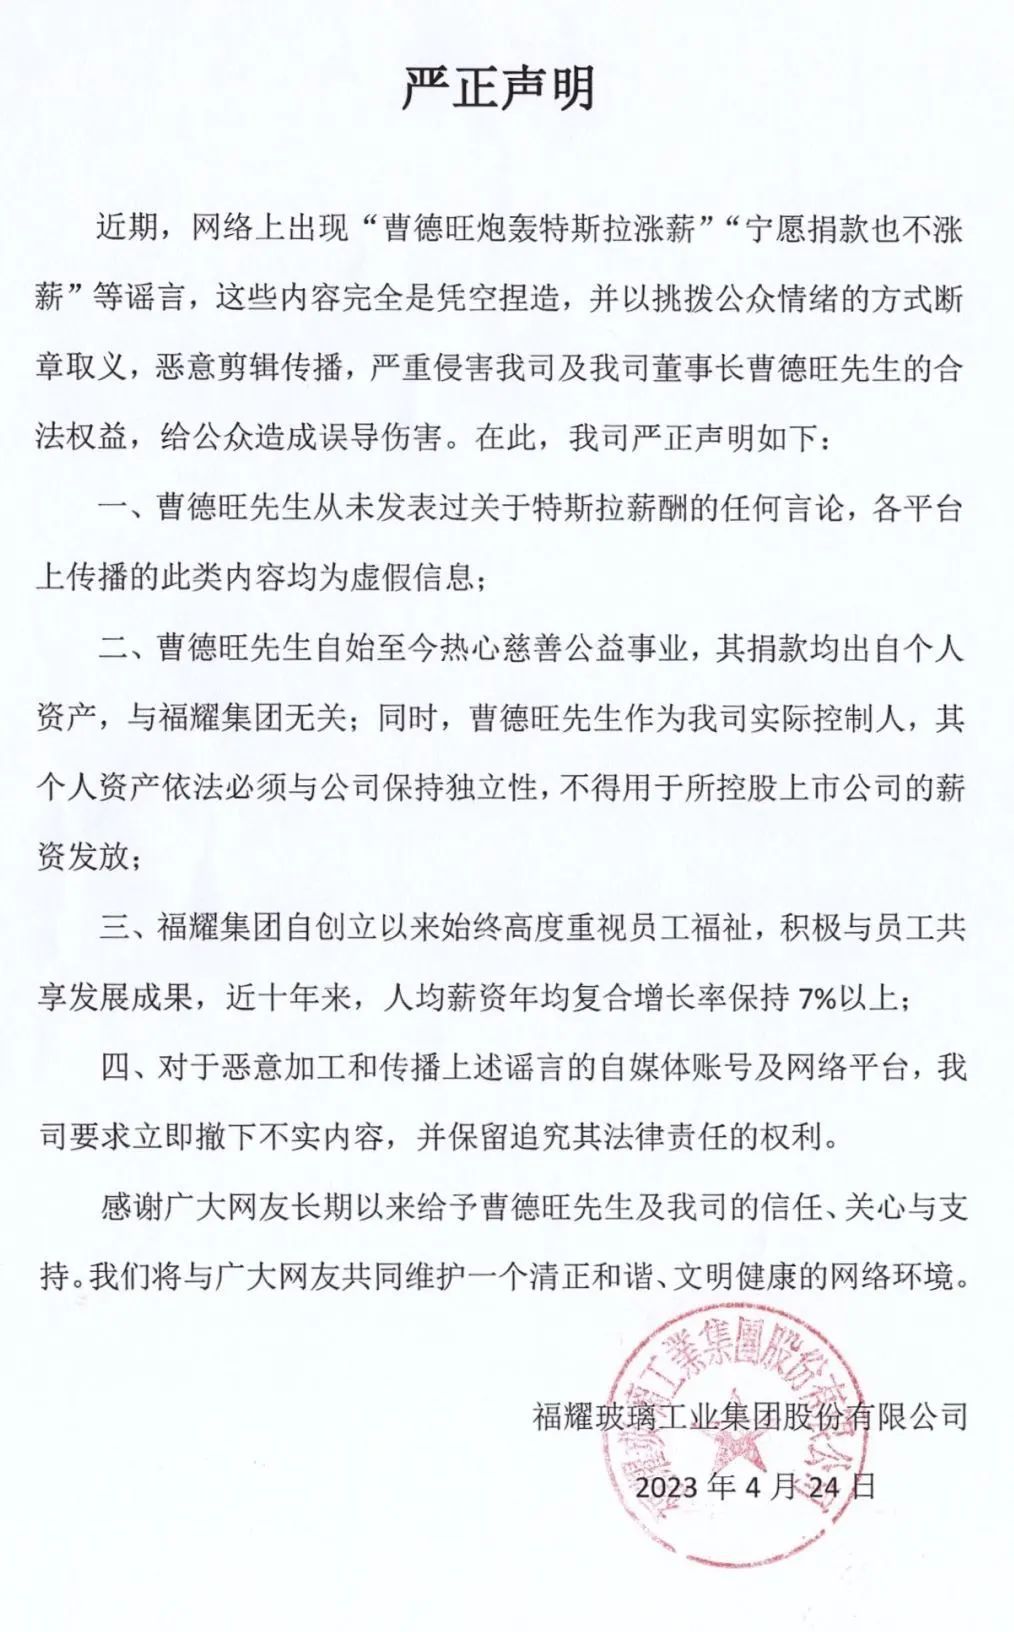 福耀集团声明：曹德旺从未发表过关于特斯拉薪酬的任何言论